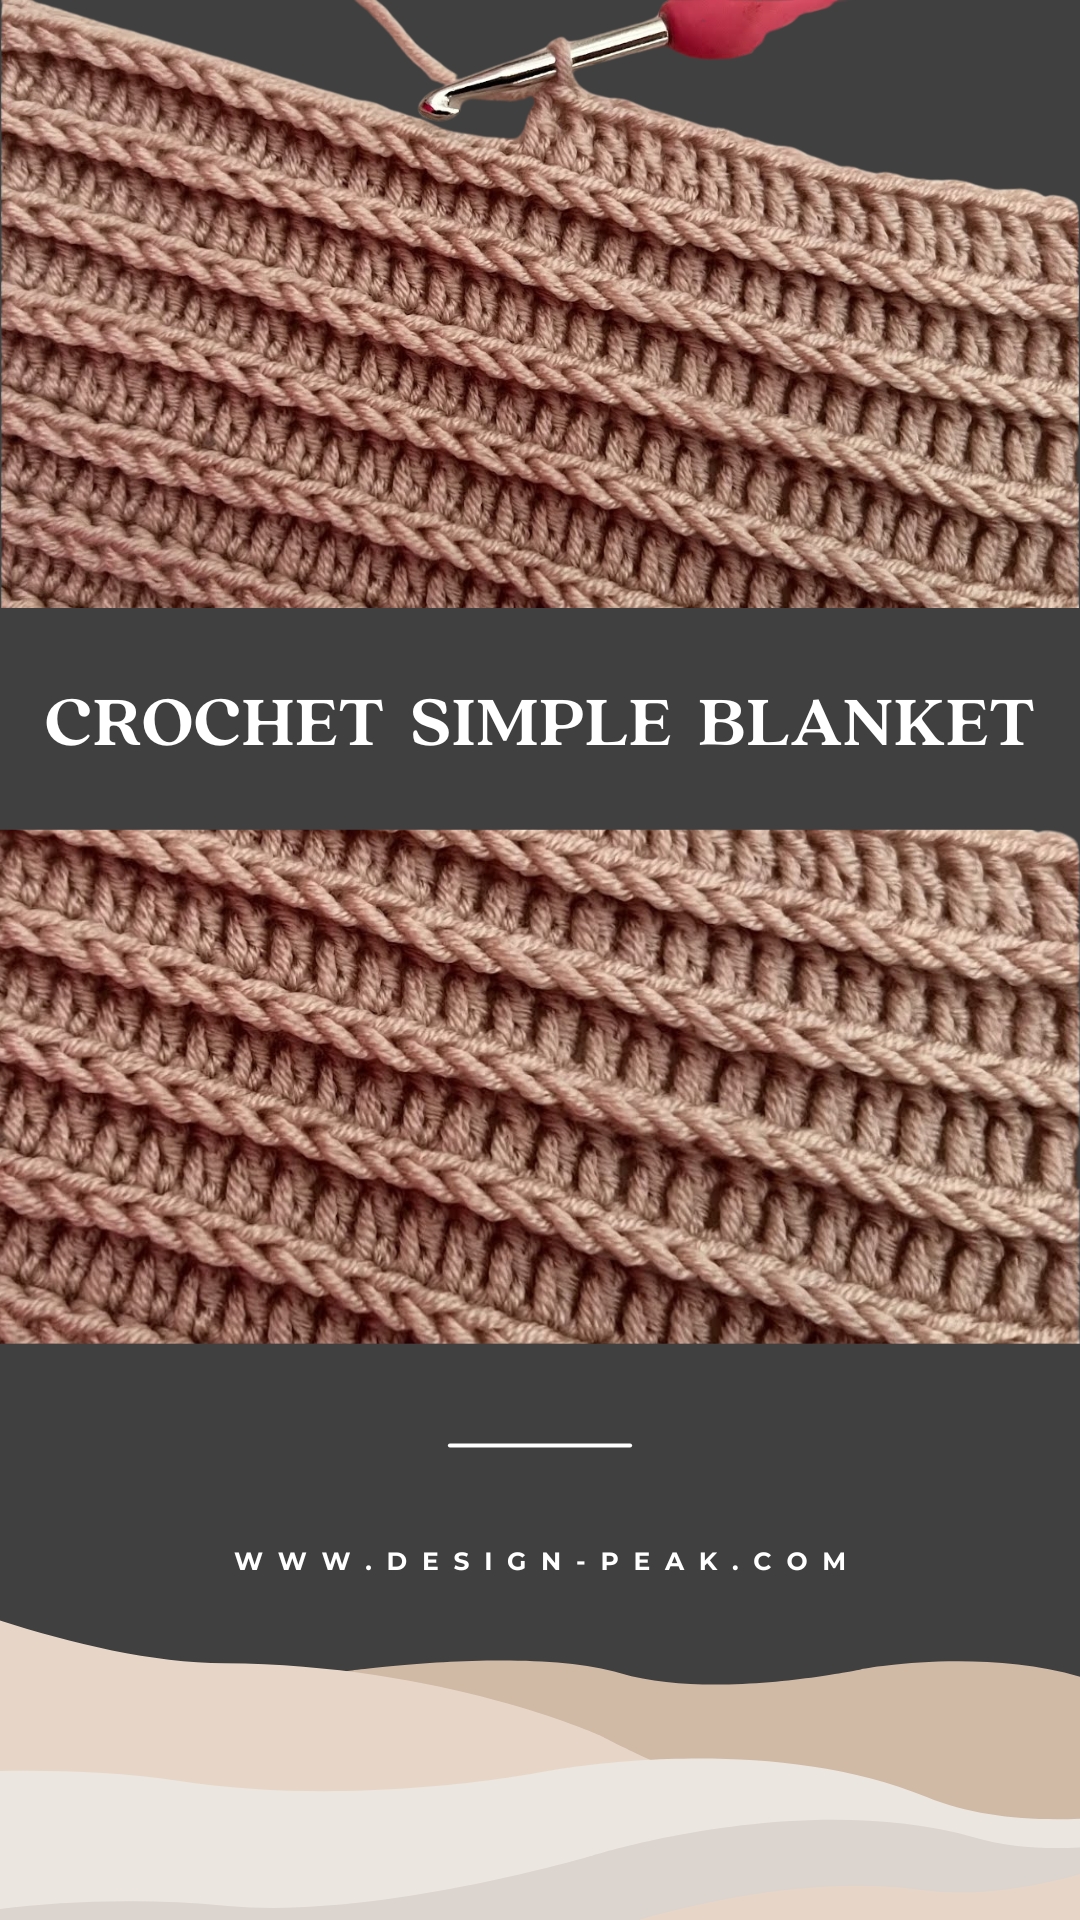 Crochet Simple Blanket for Beginners